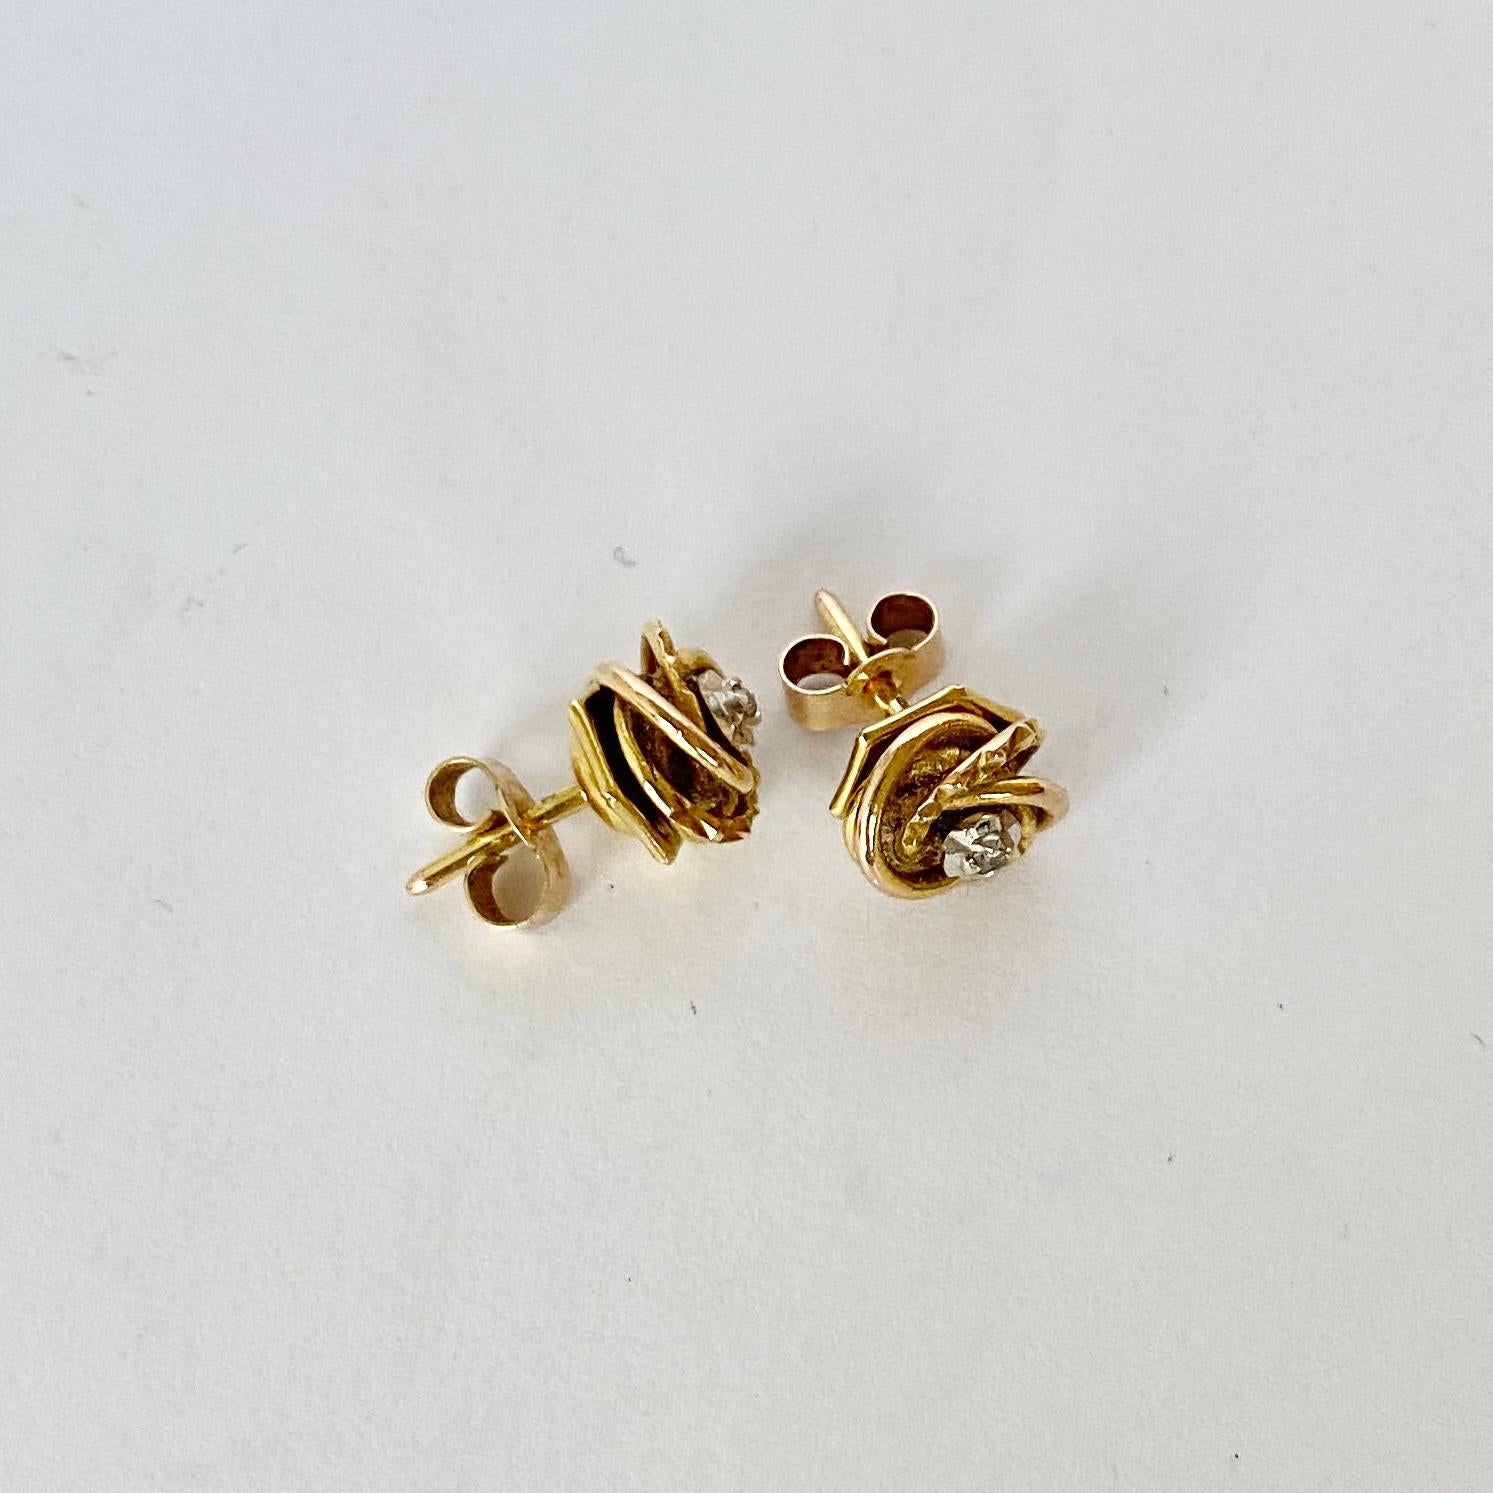 Glänzendes 9-karätiges Gelbgold, das mit einem Knoten verziert ist, bildet das stilvollste Design für diese Ohrringe. In der Mitte des Knotens befindet sich eine Diamantspitze in einer Illusionsfassung. 

Knoten-Durchmesser: 8mm

Gewicht: 1,67g